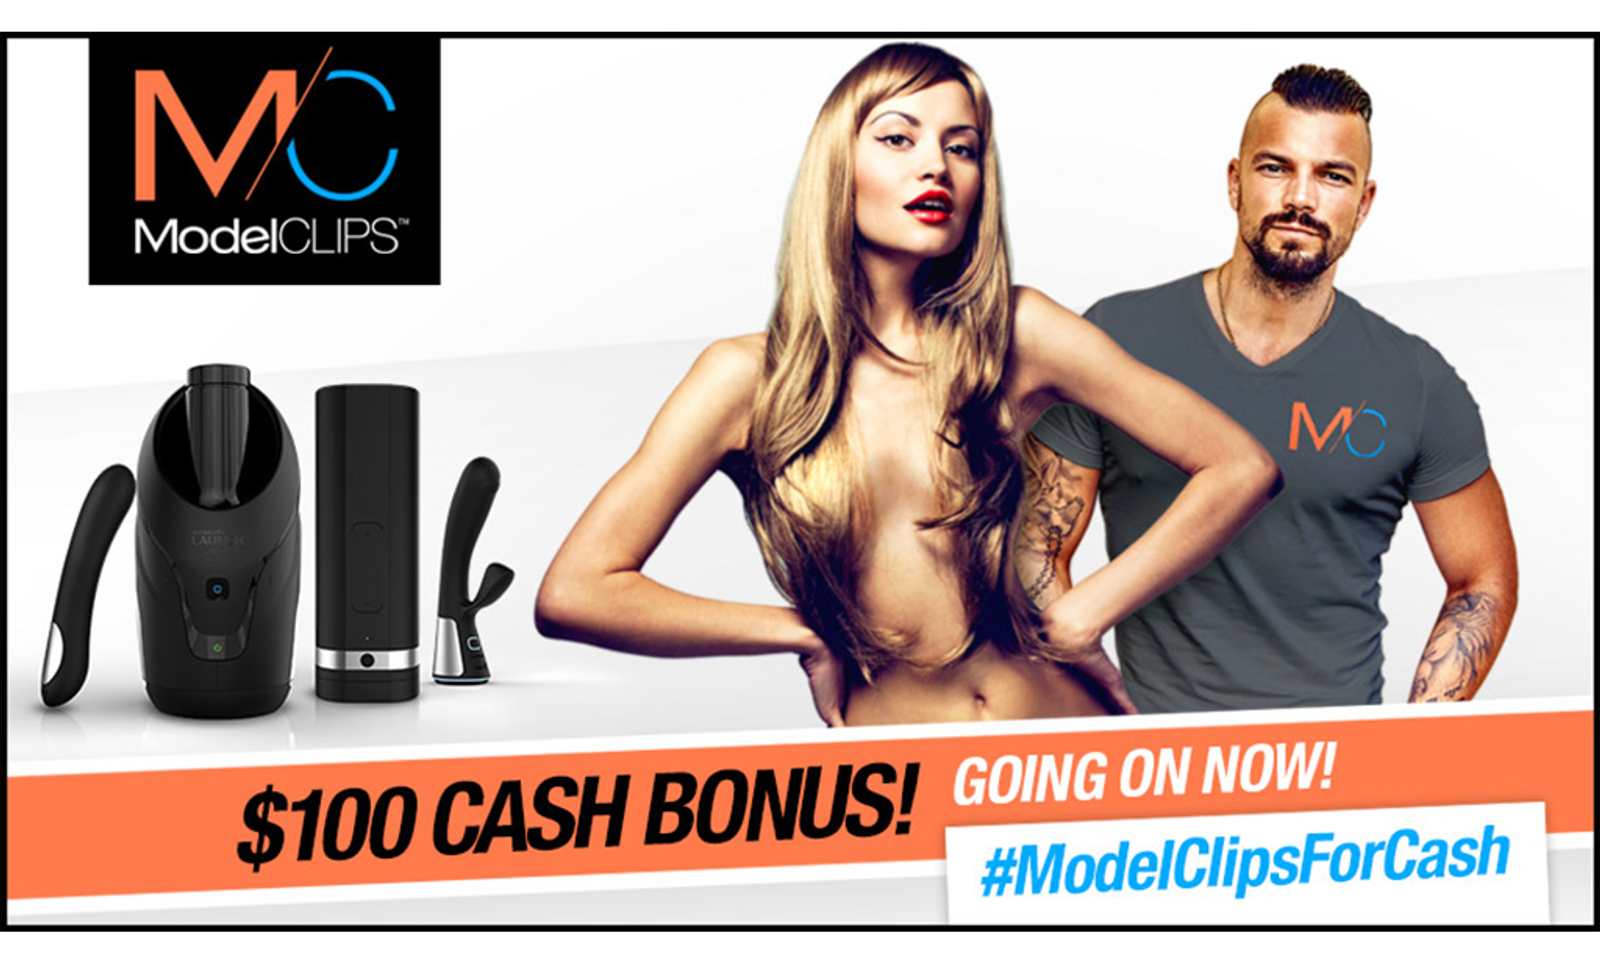 ModelClips Begins $100 Bonuses for Content Uploads & Tweets